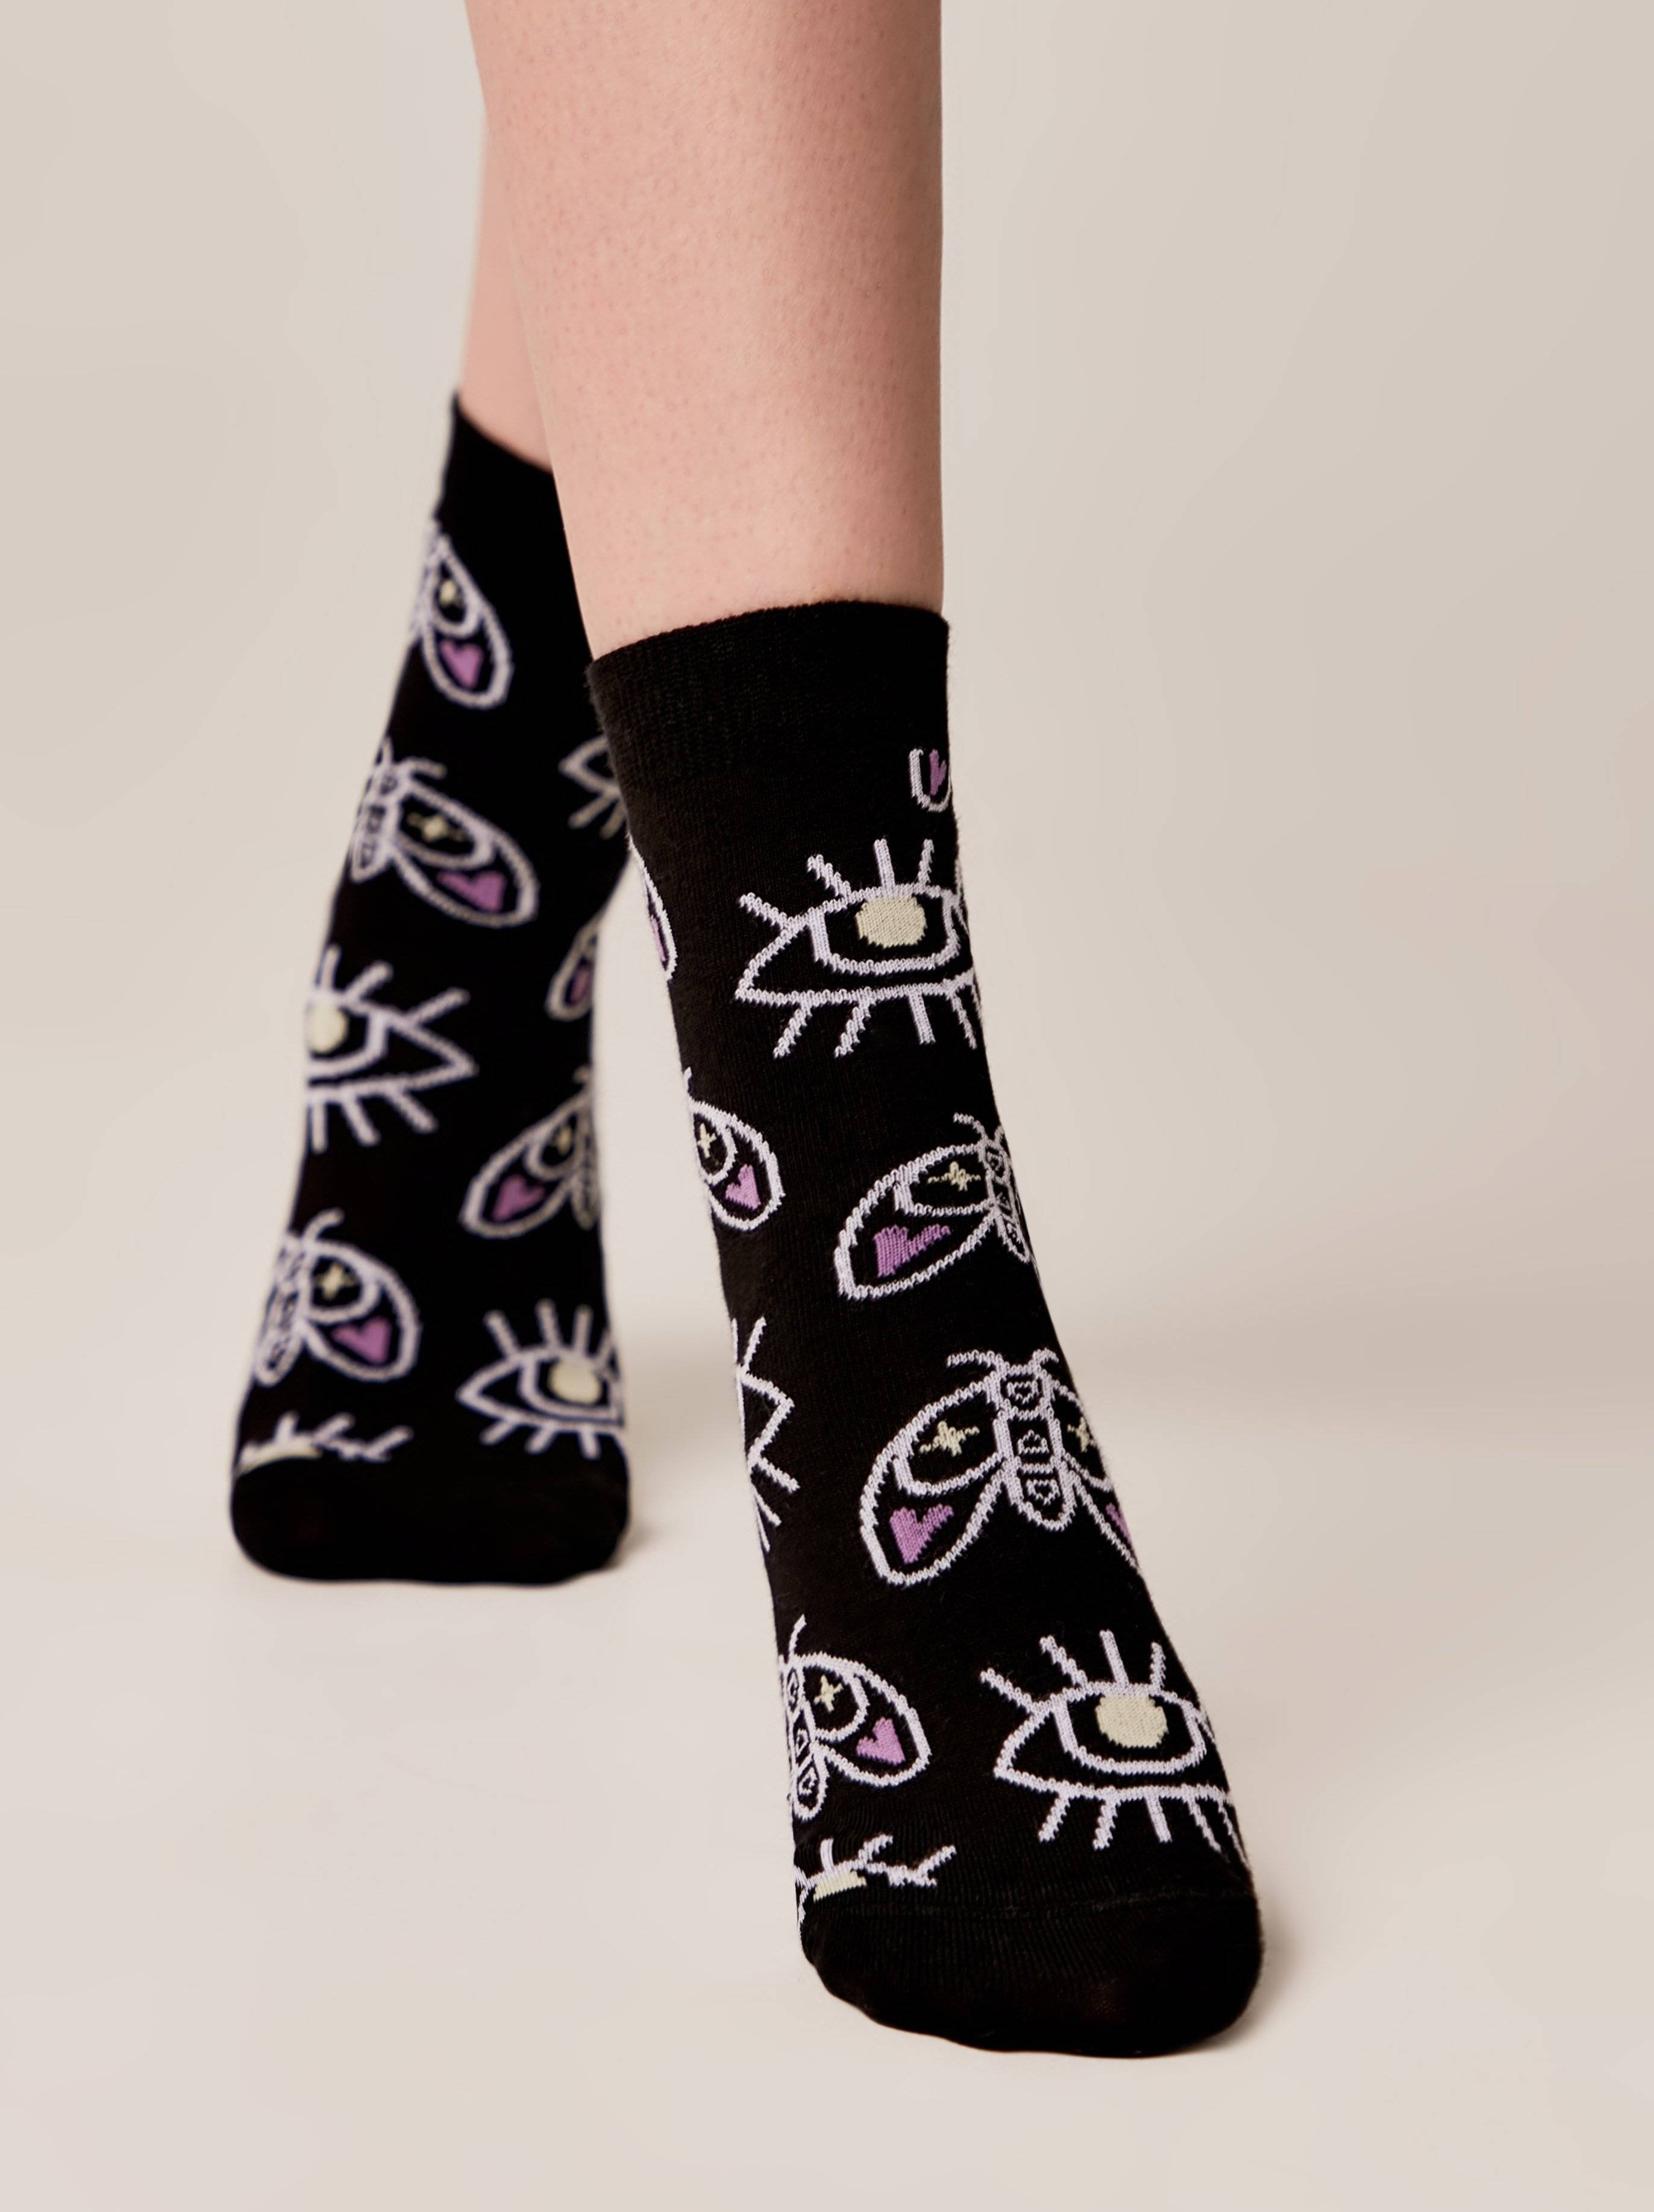 Conte Woman's Socks 366